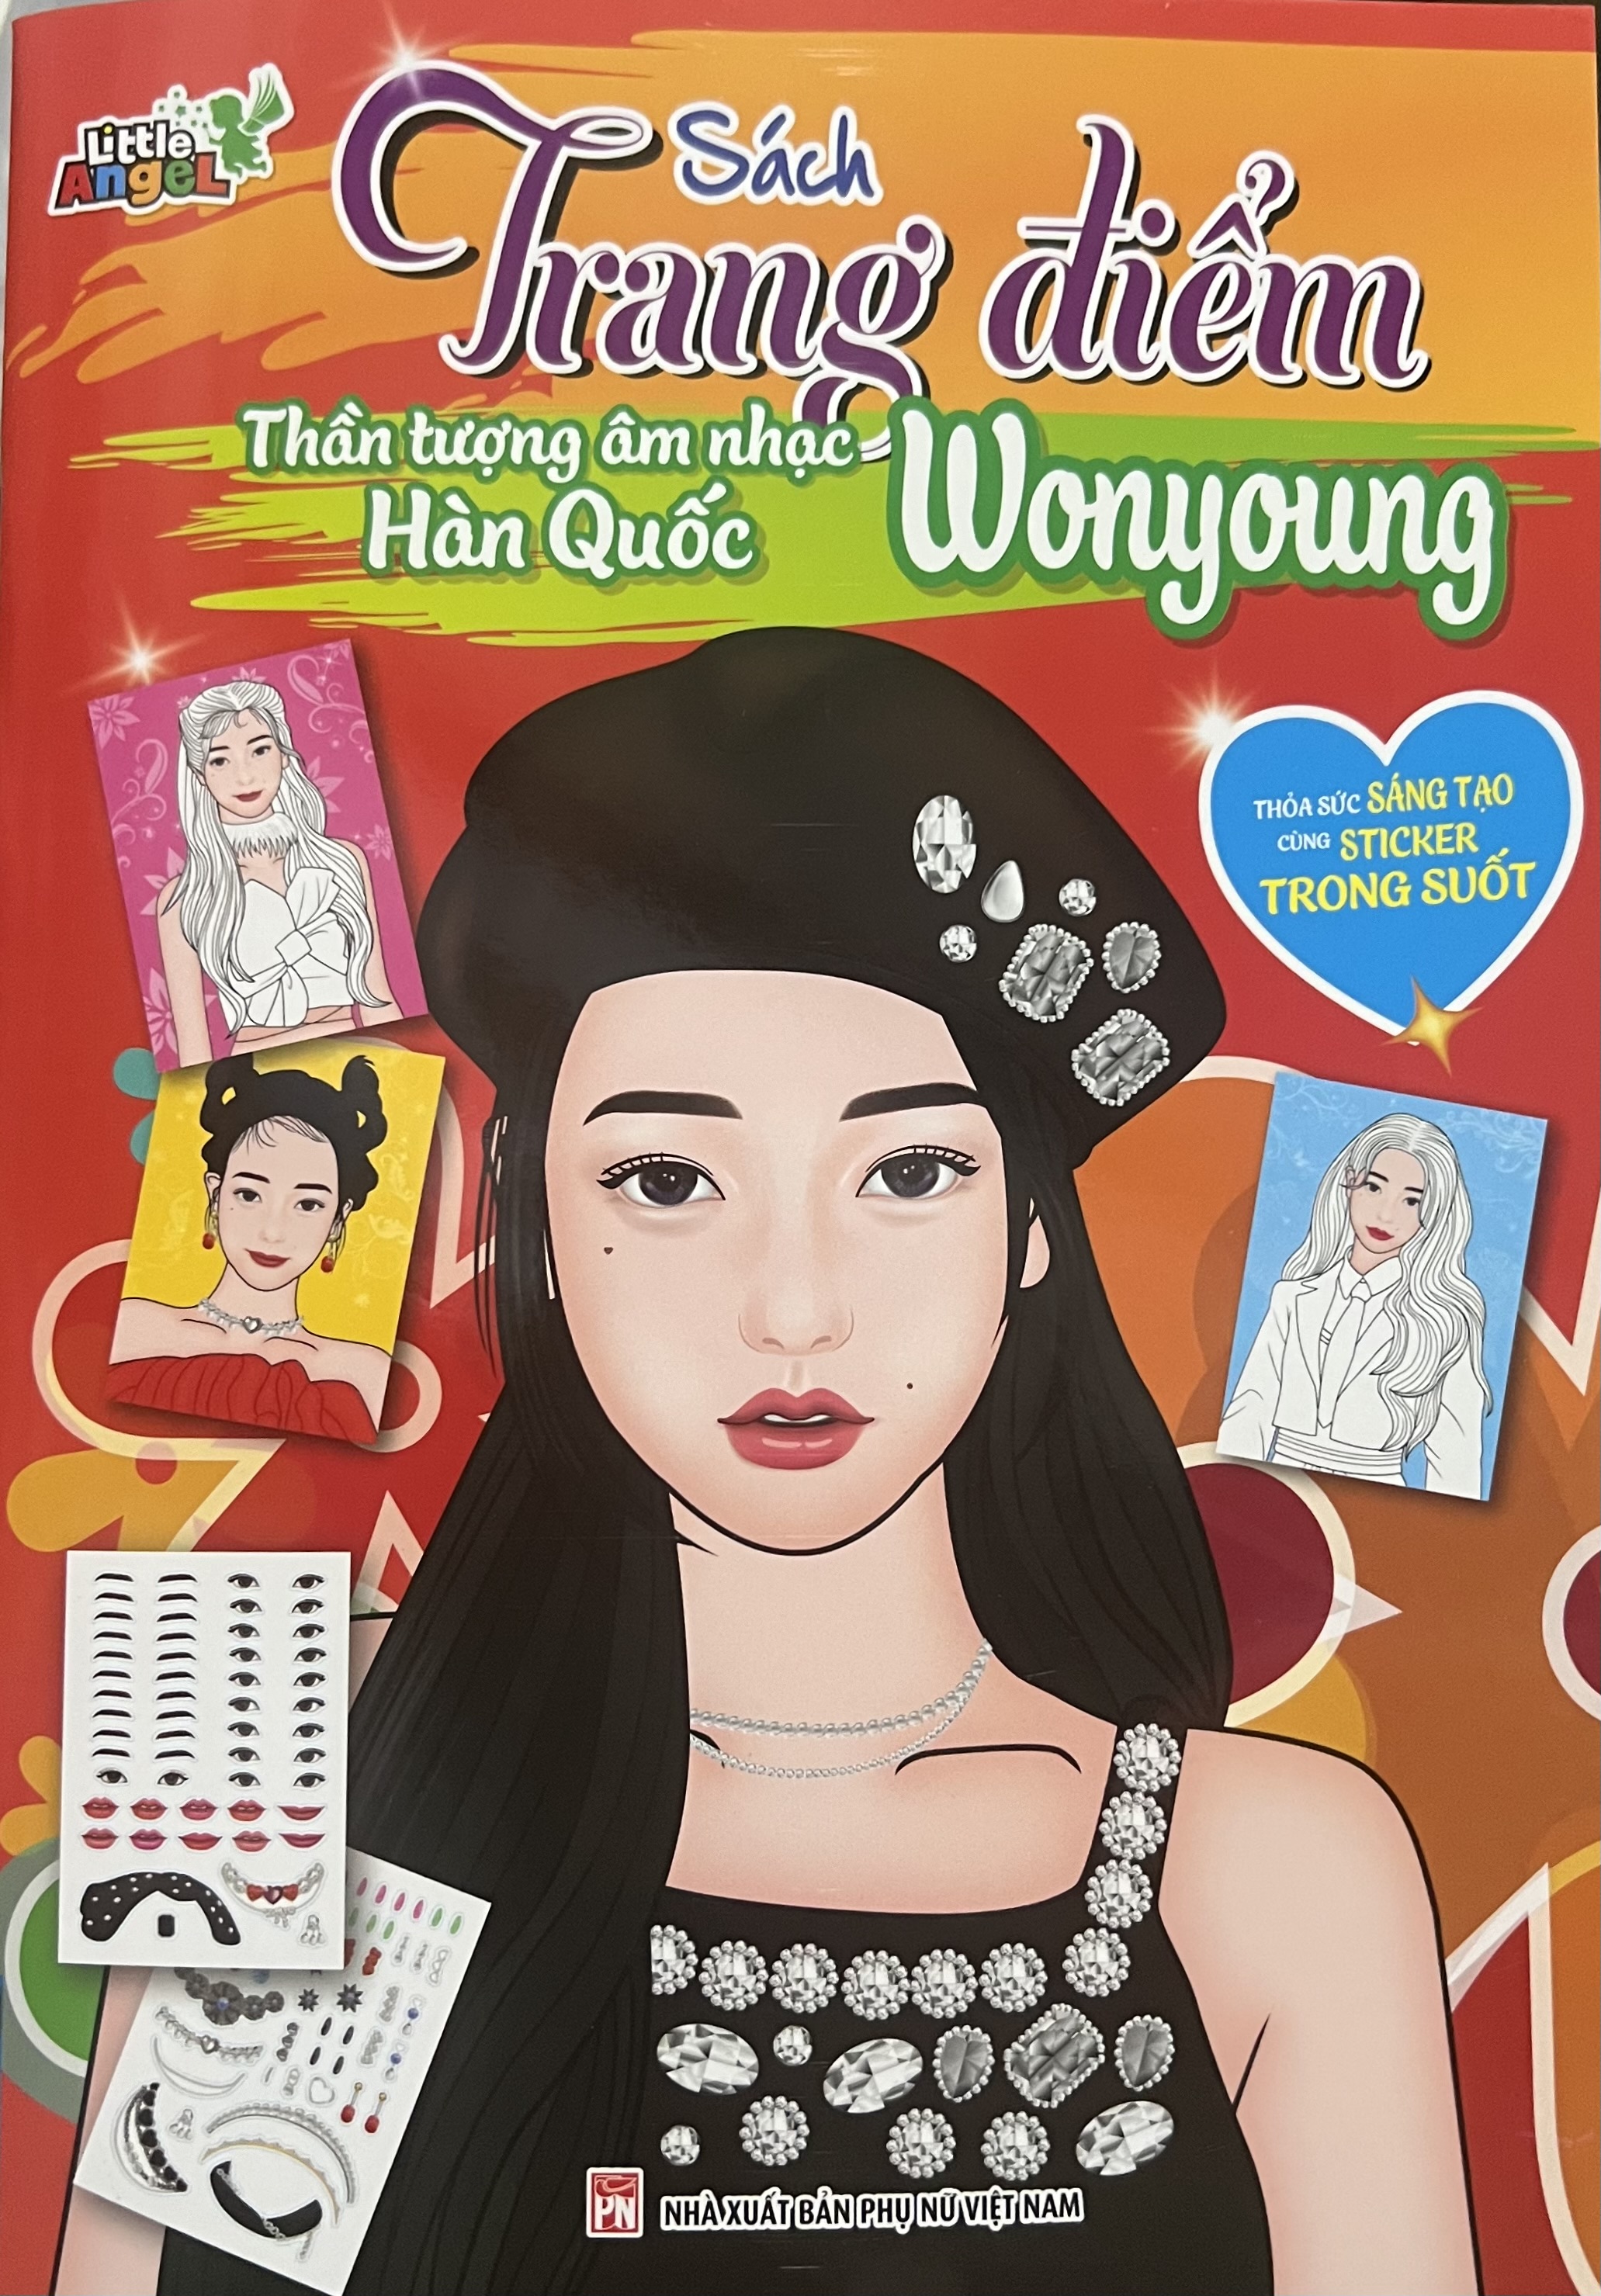 Sách - Sách Trang Điểm Thần Tượng Âm Nhạc Hàn Quốc Wonyoung